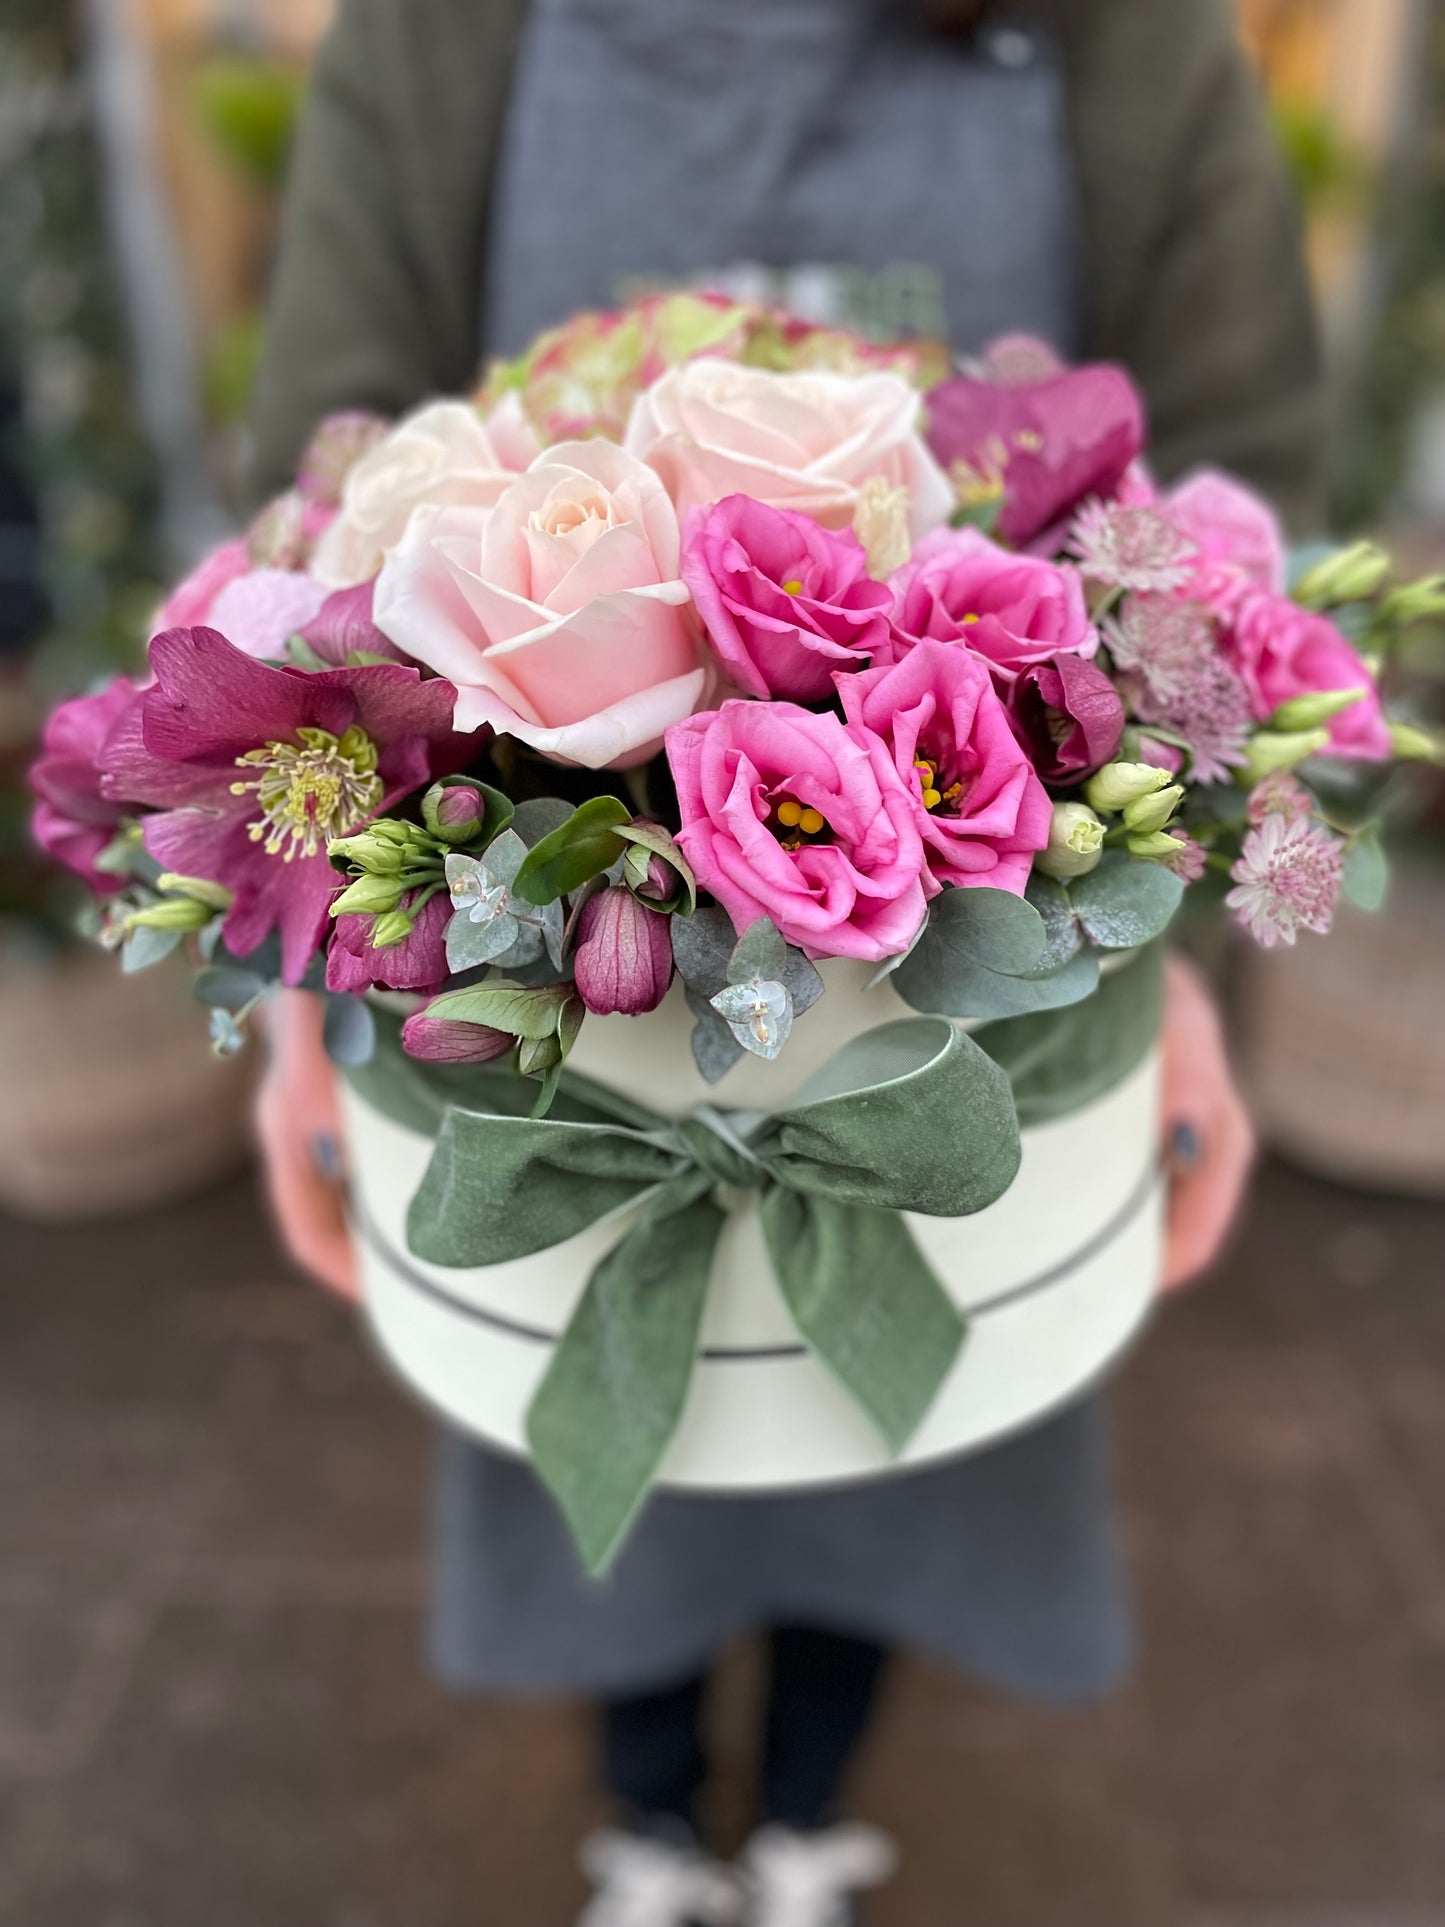 Florist Choice Flowers - Arrangements